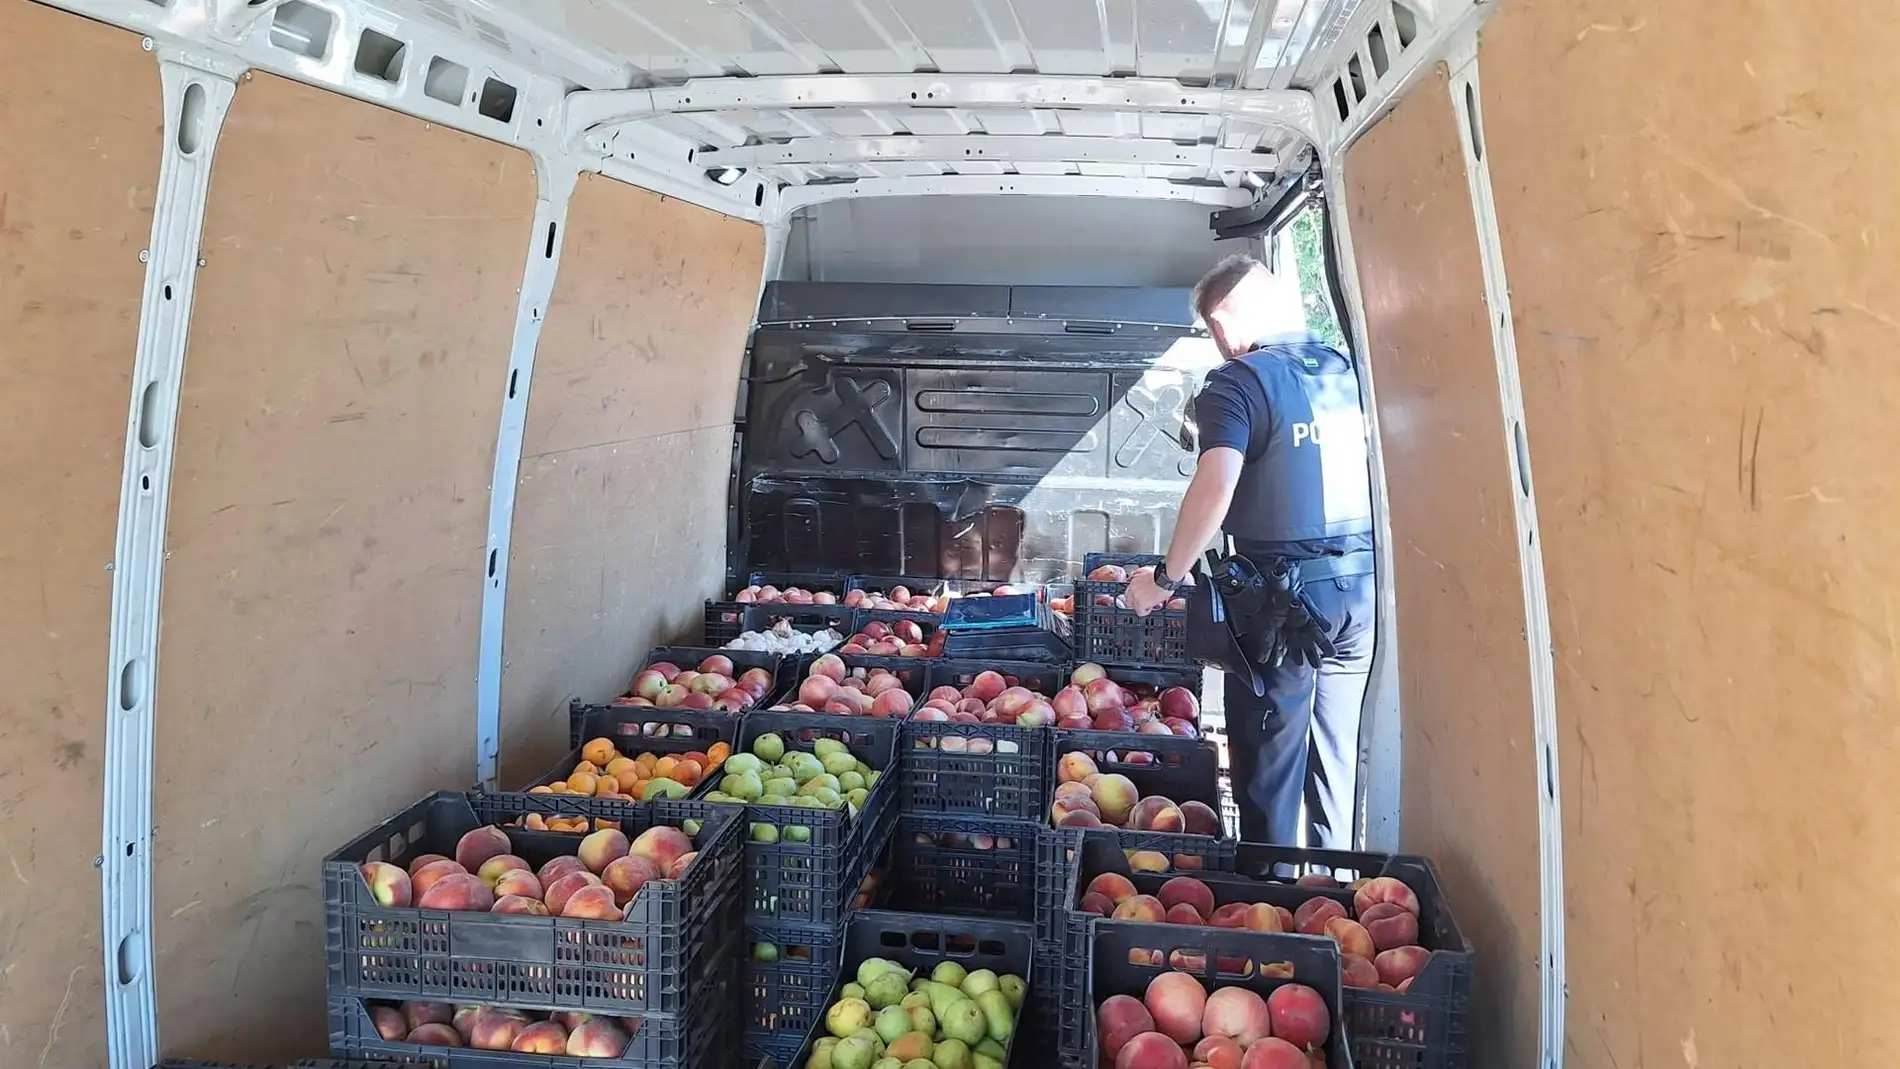 La Policía Local de Cáceres incauta en el mercadillo 800 kilos de fruta que se vendía sin licencia